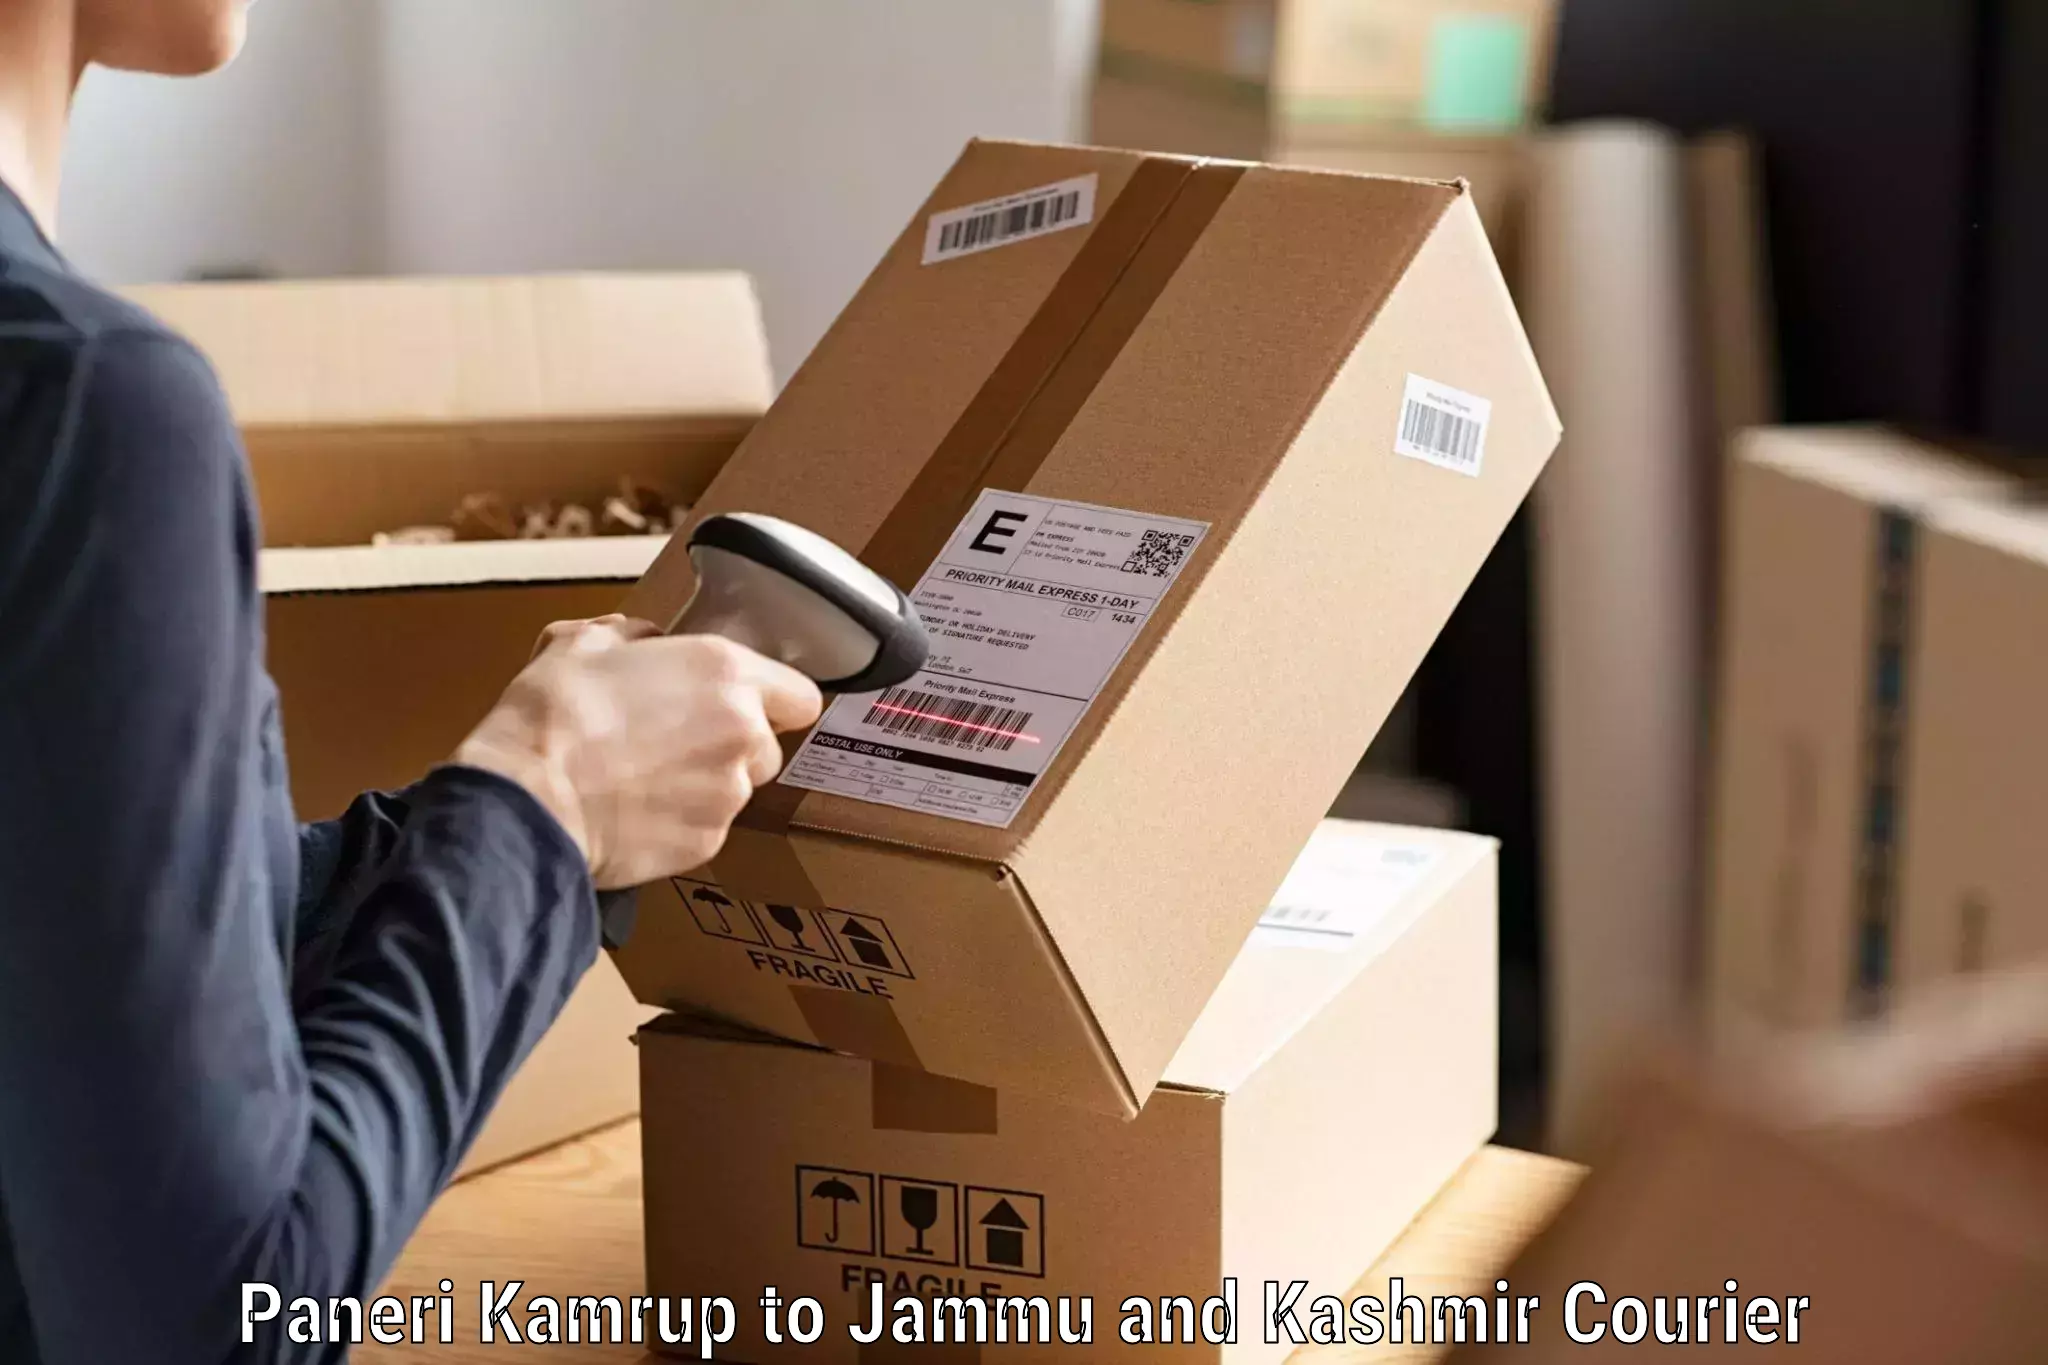 Efficient parcel delivery Paneri Kamrup to University of Kashmir Srinagar